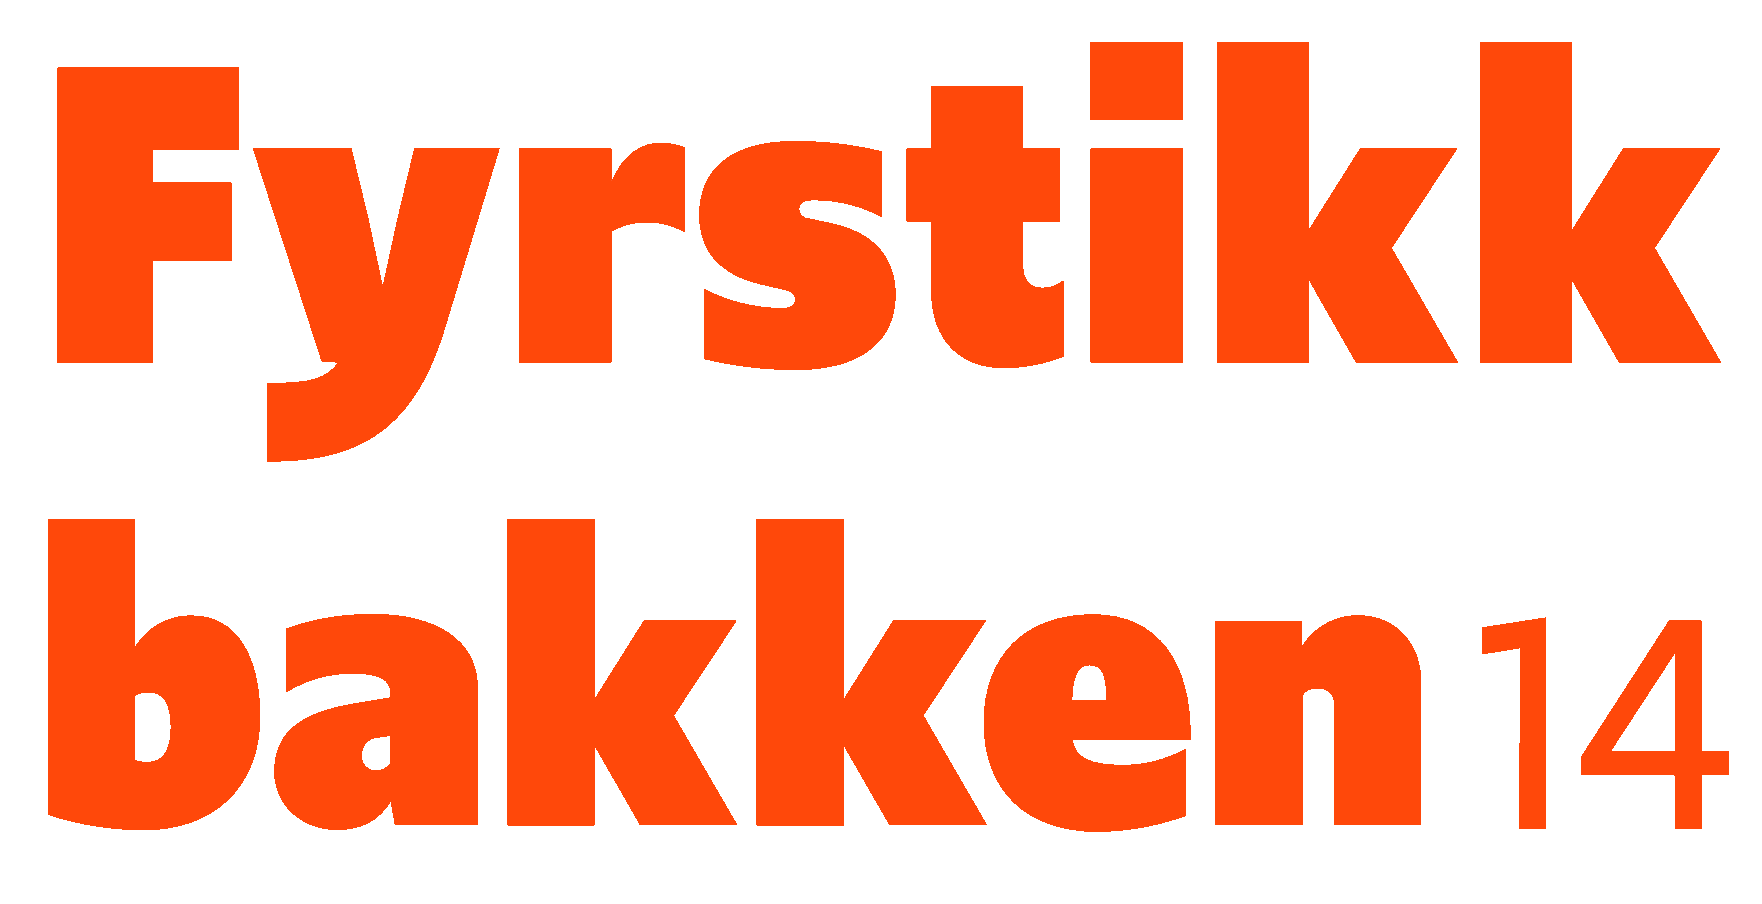 The logo of the feed named Fyrstikkbakken 14.